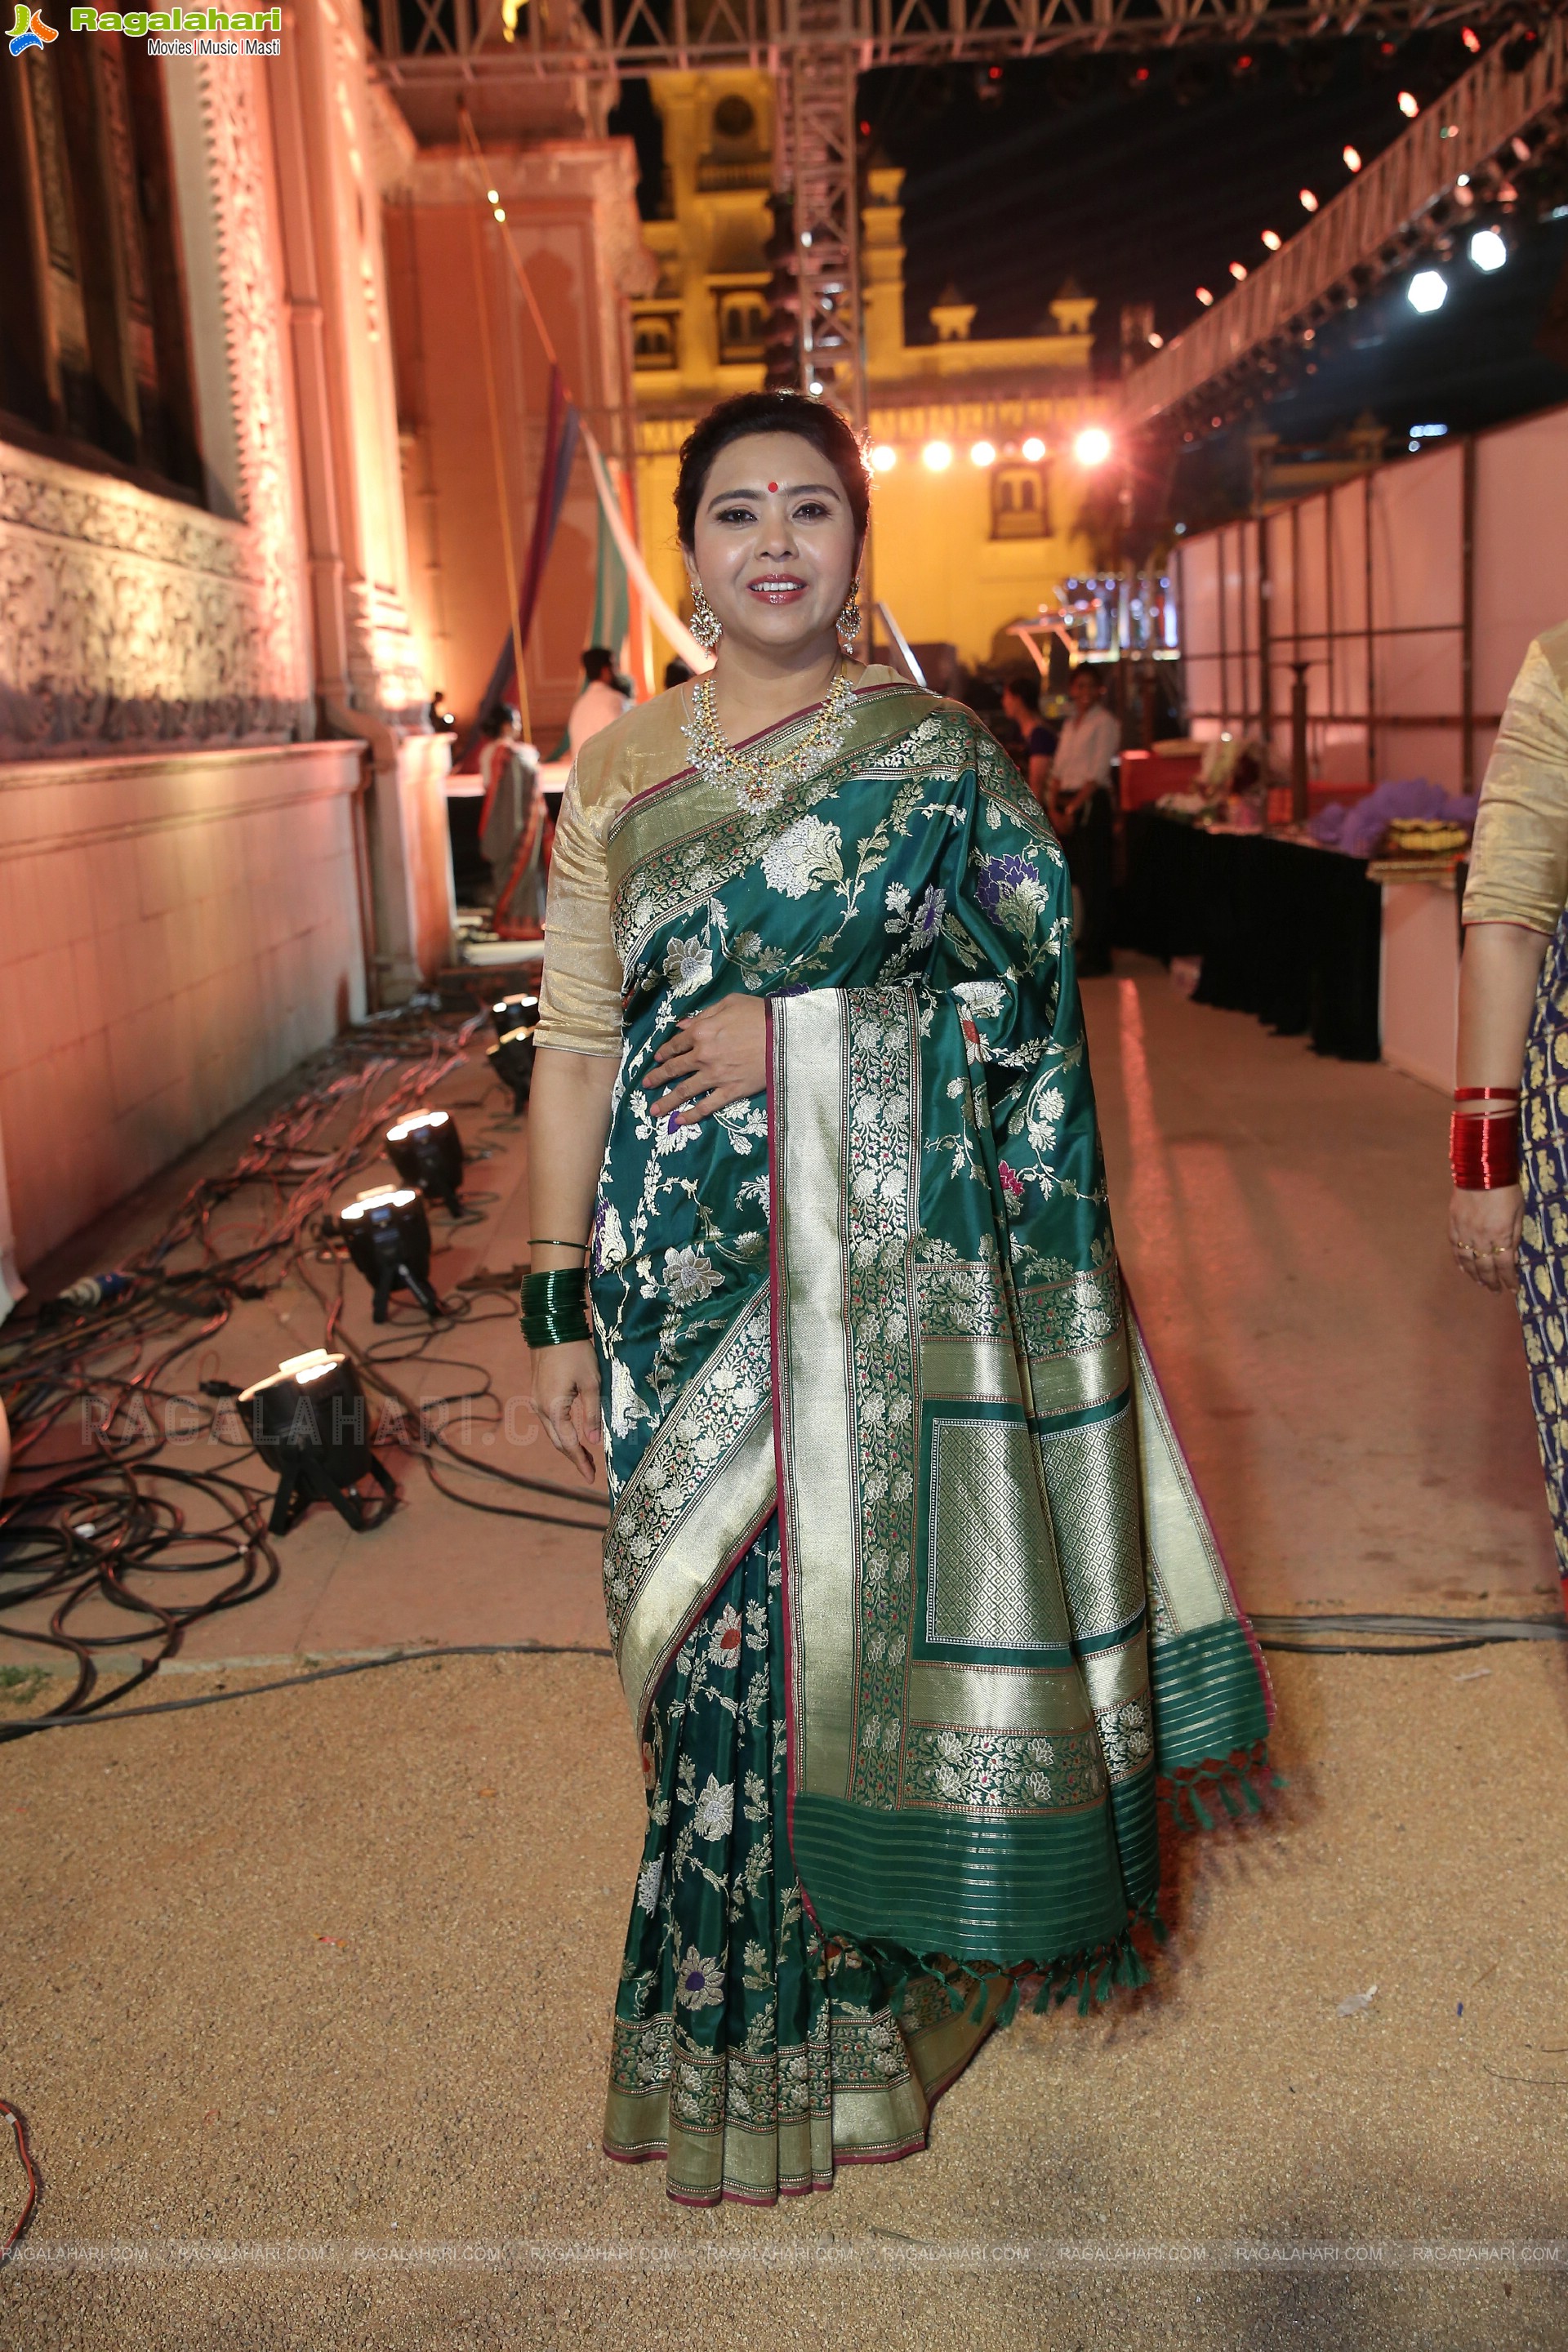 Sanskruti Womens Club Grand Annual Event 2023 at Chowmahalla Palace, Khilwath